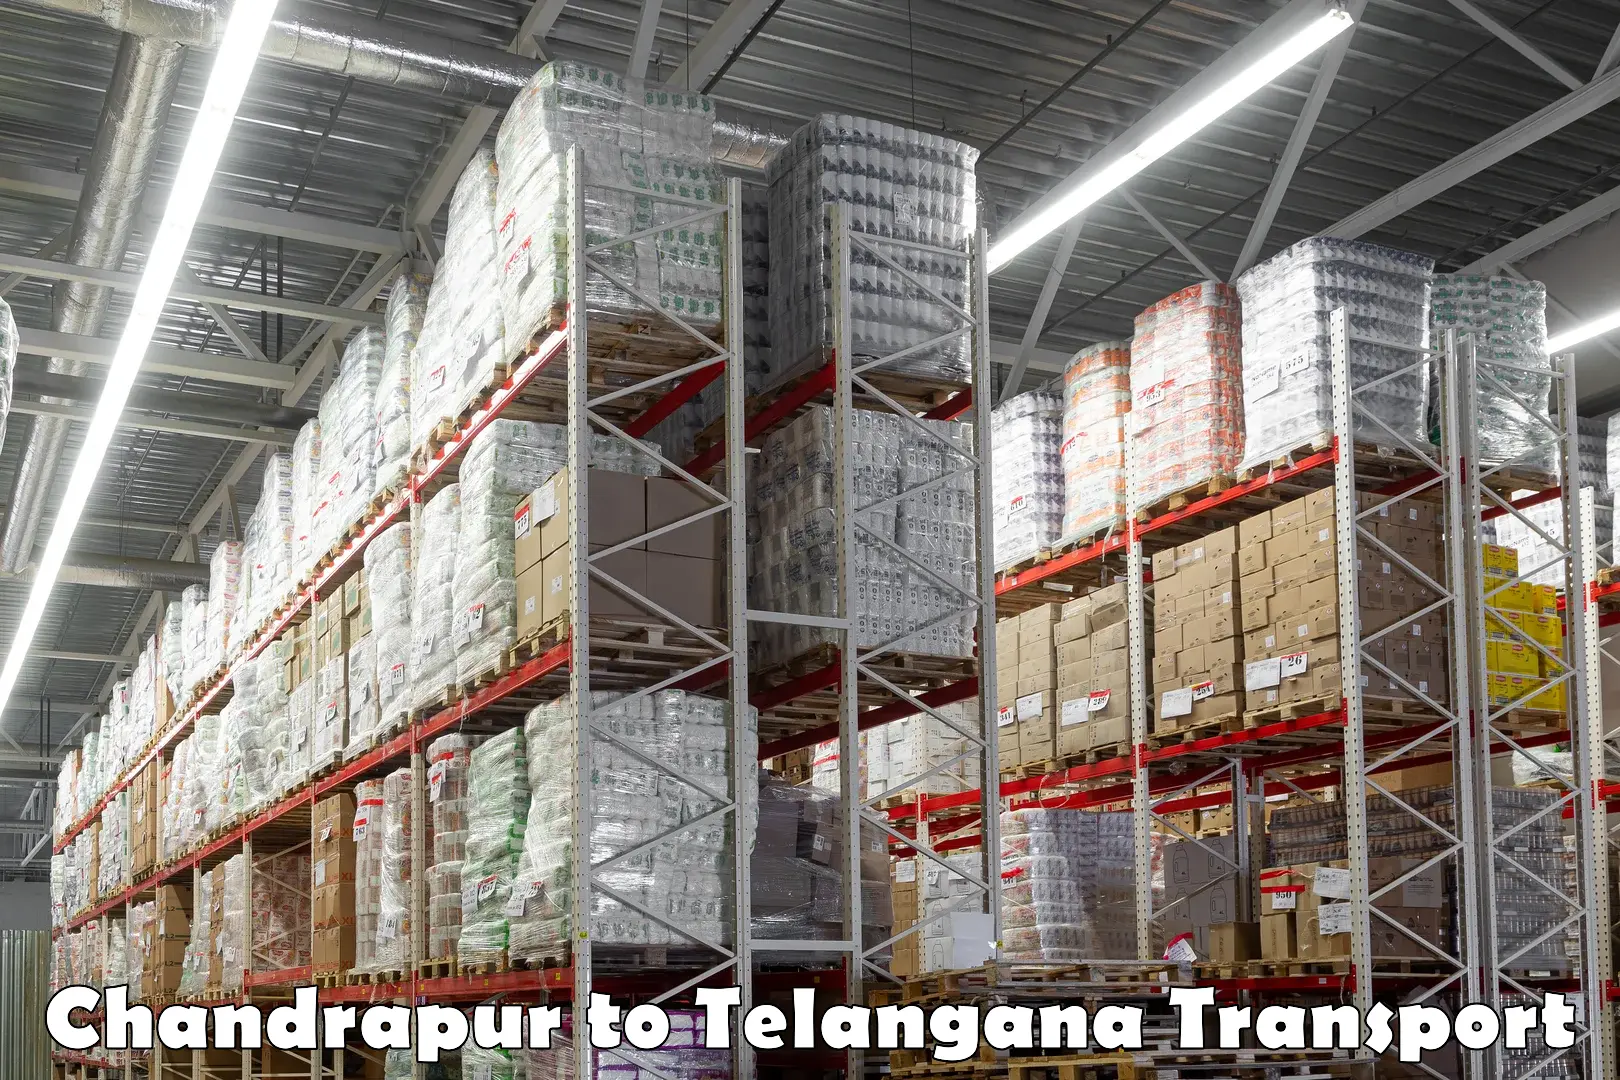 Luggage transport services Chandrapur to Nizamabad